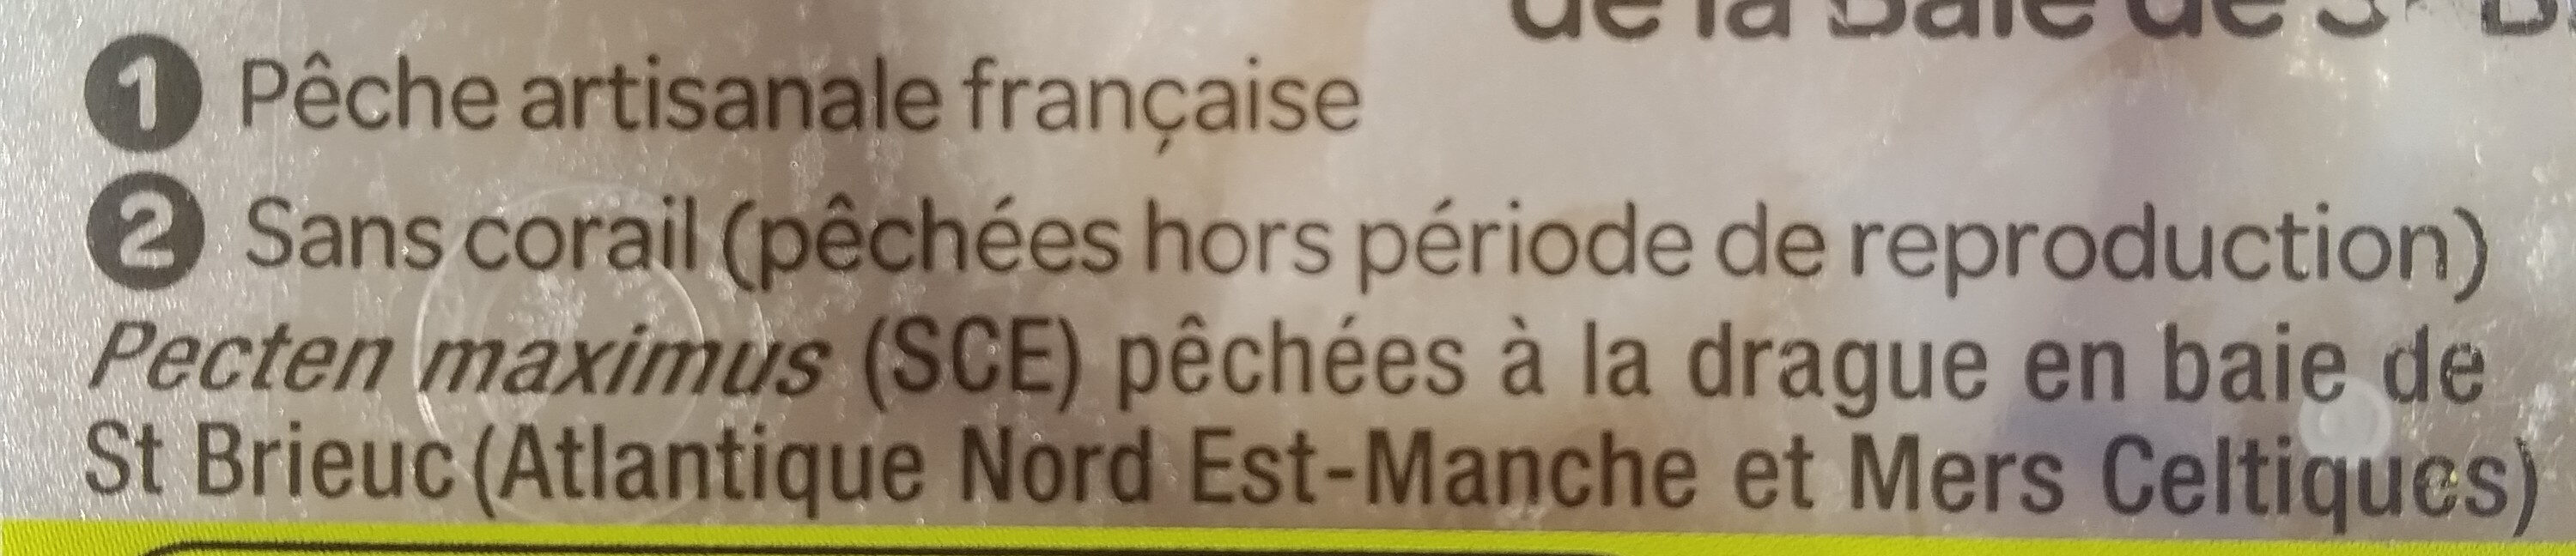 noix de Saint-Jacques de la baie de Saint-Brieuc - Ingredients - fr